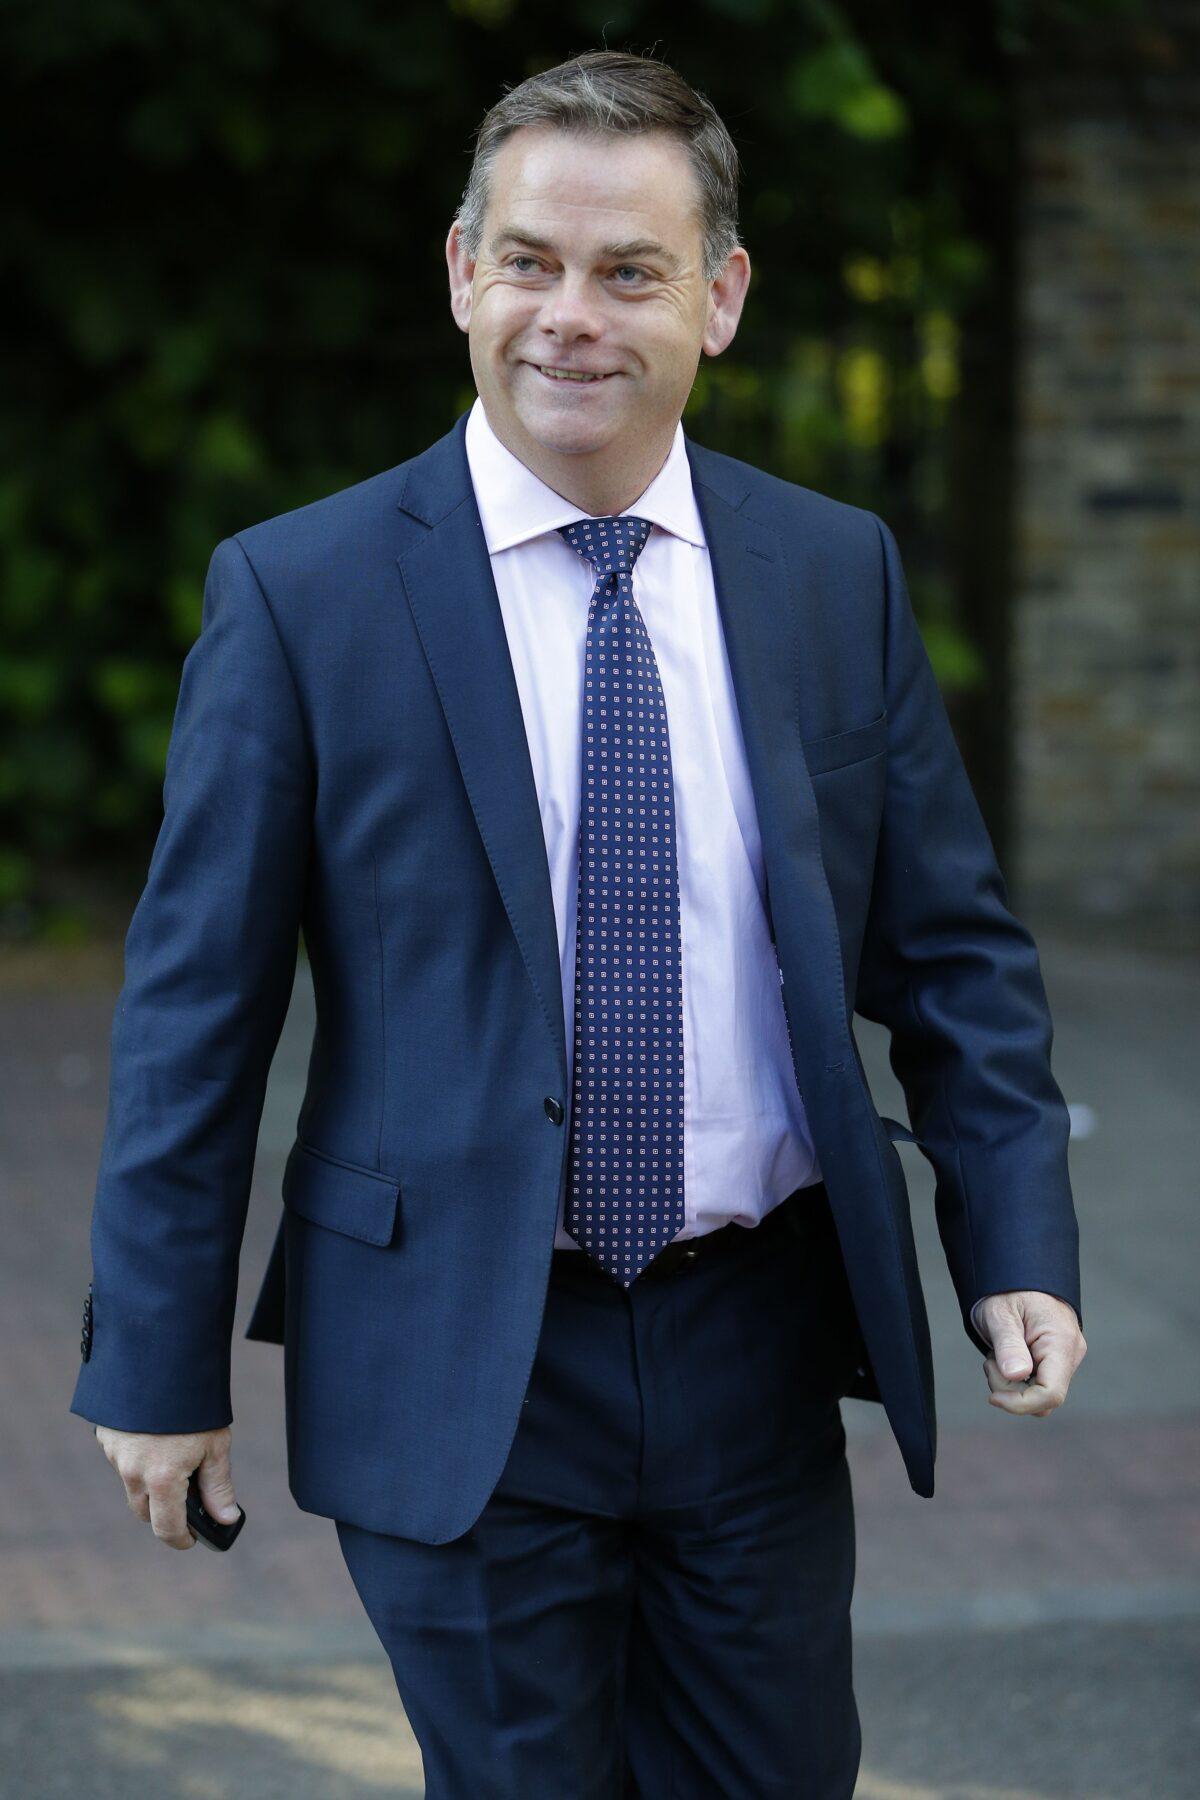 Nigel Adams leaves the home of Boris Johnson, in London, on June 28, 2016. (Odd Andersen/AFP via Getty Images)